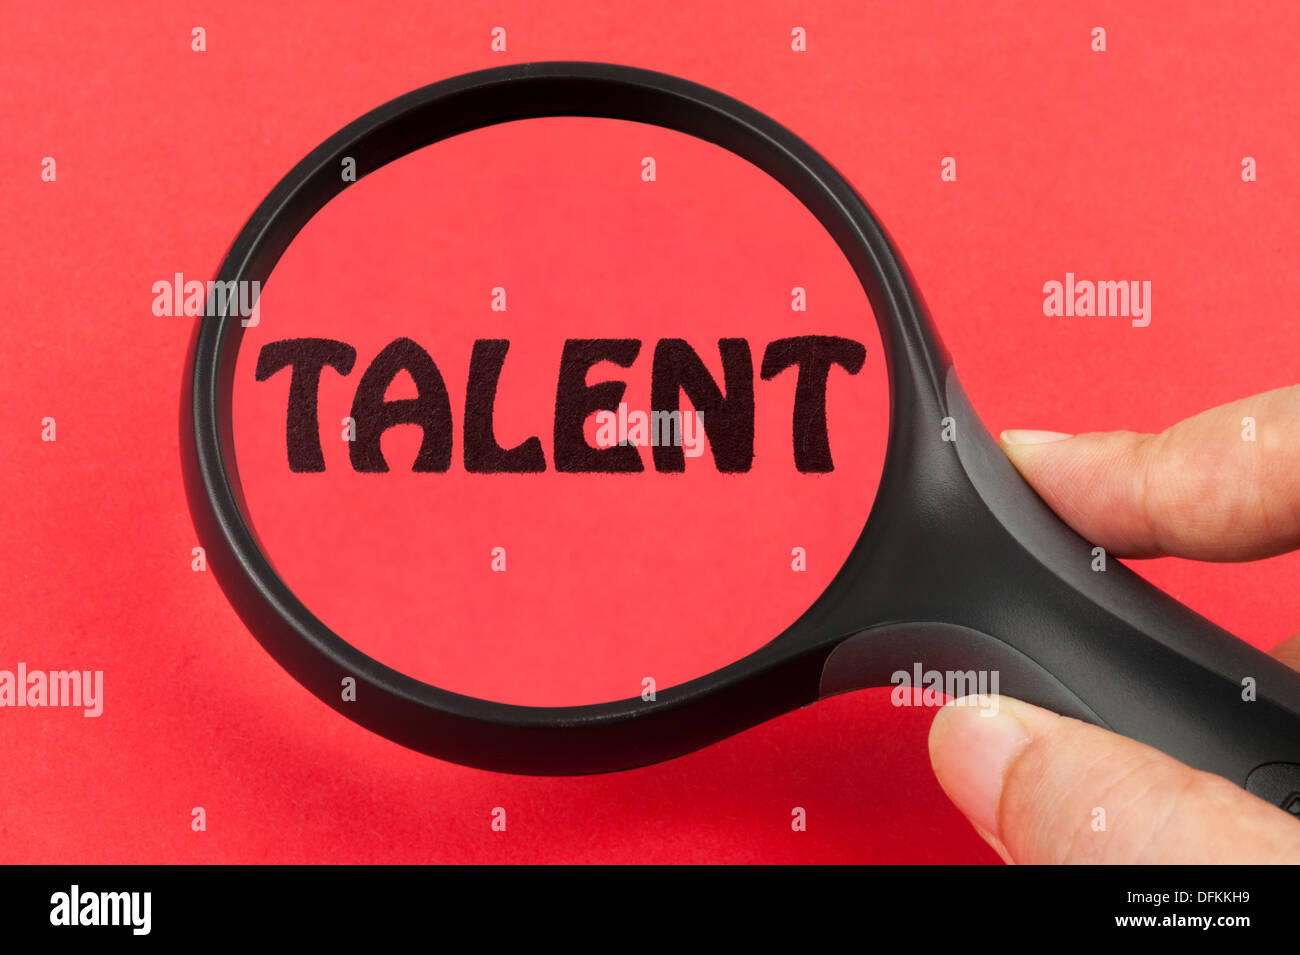 La recherche de talents concept avec une loupe en main Banque D'Images